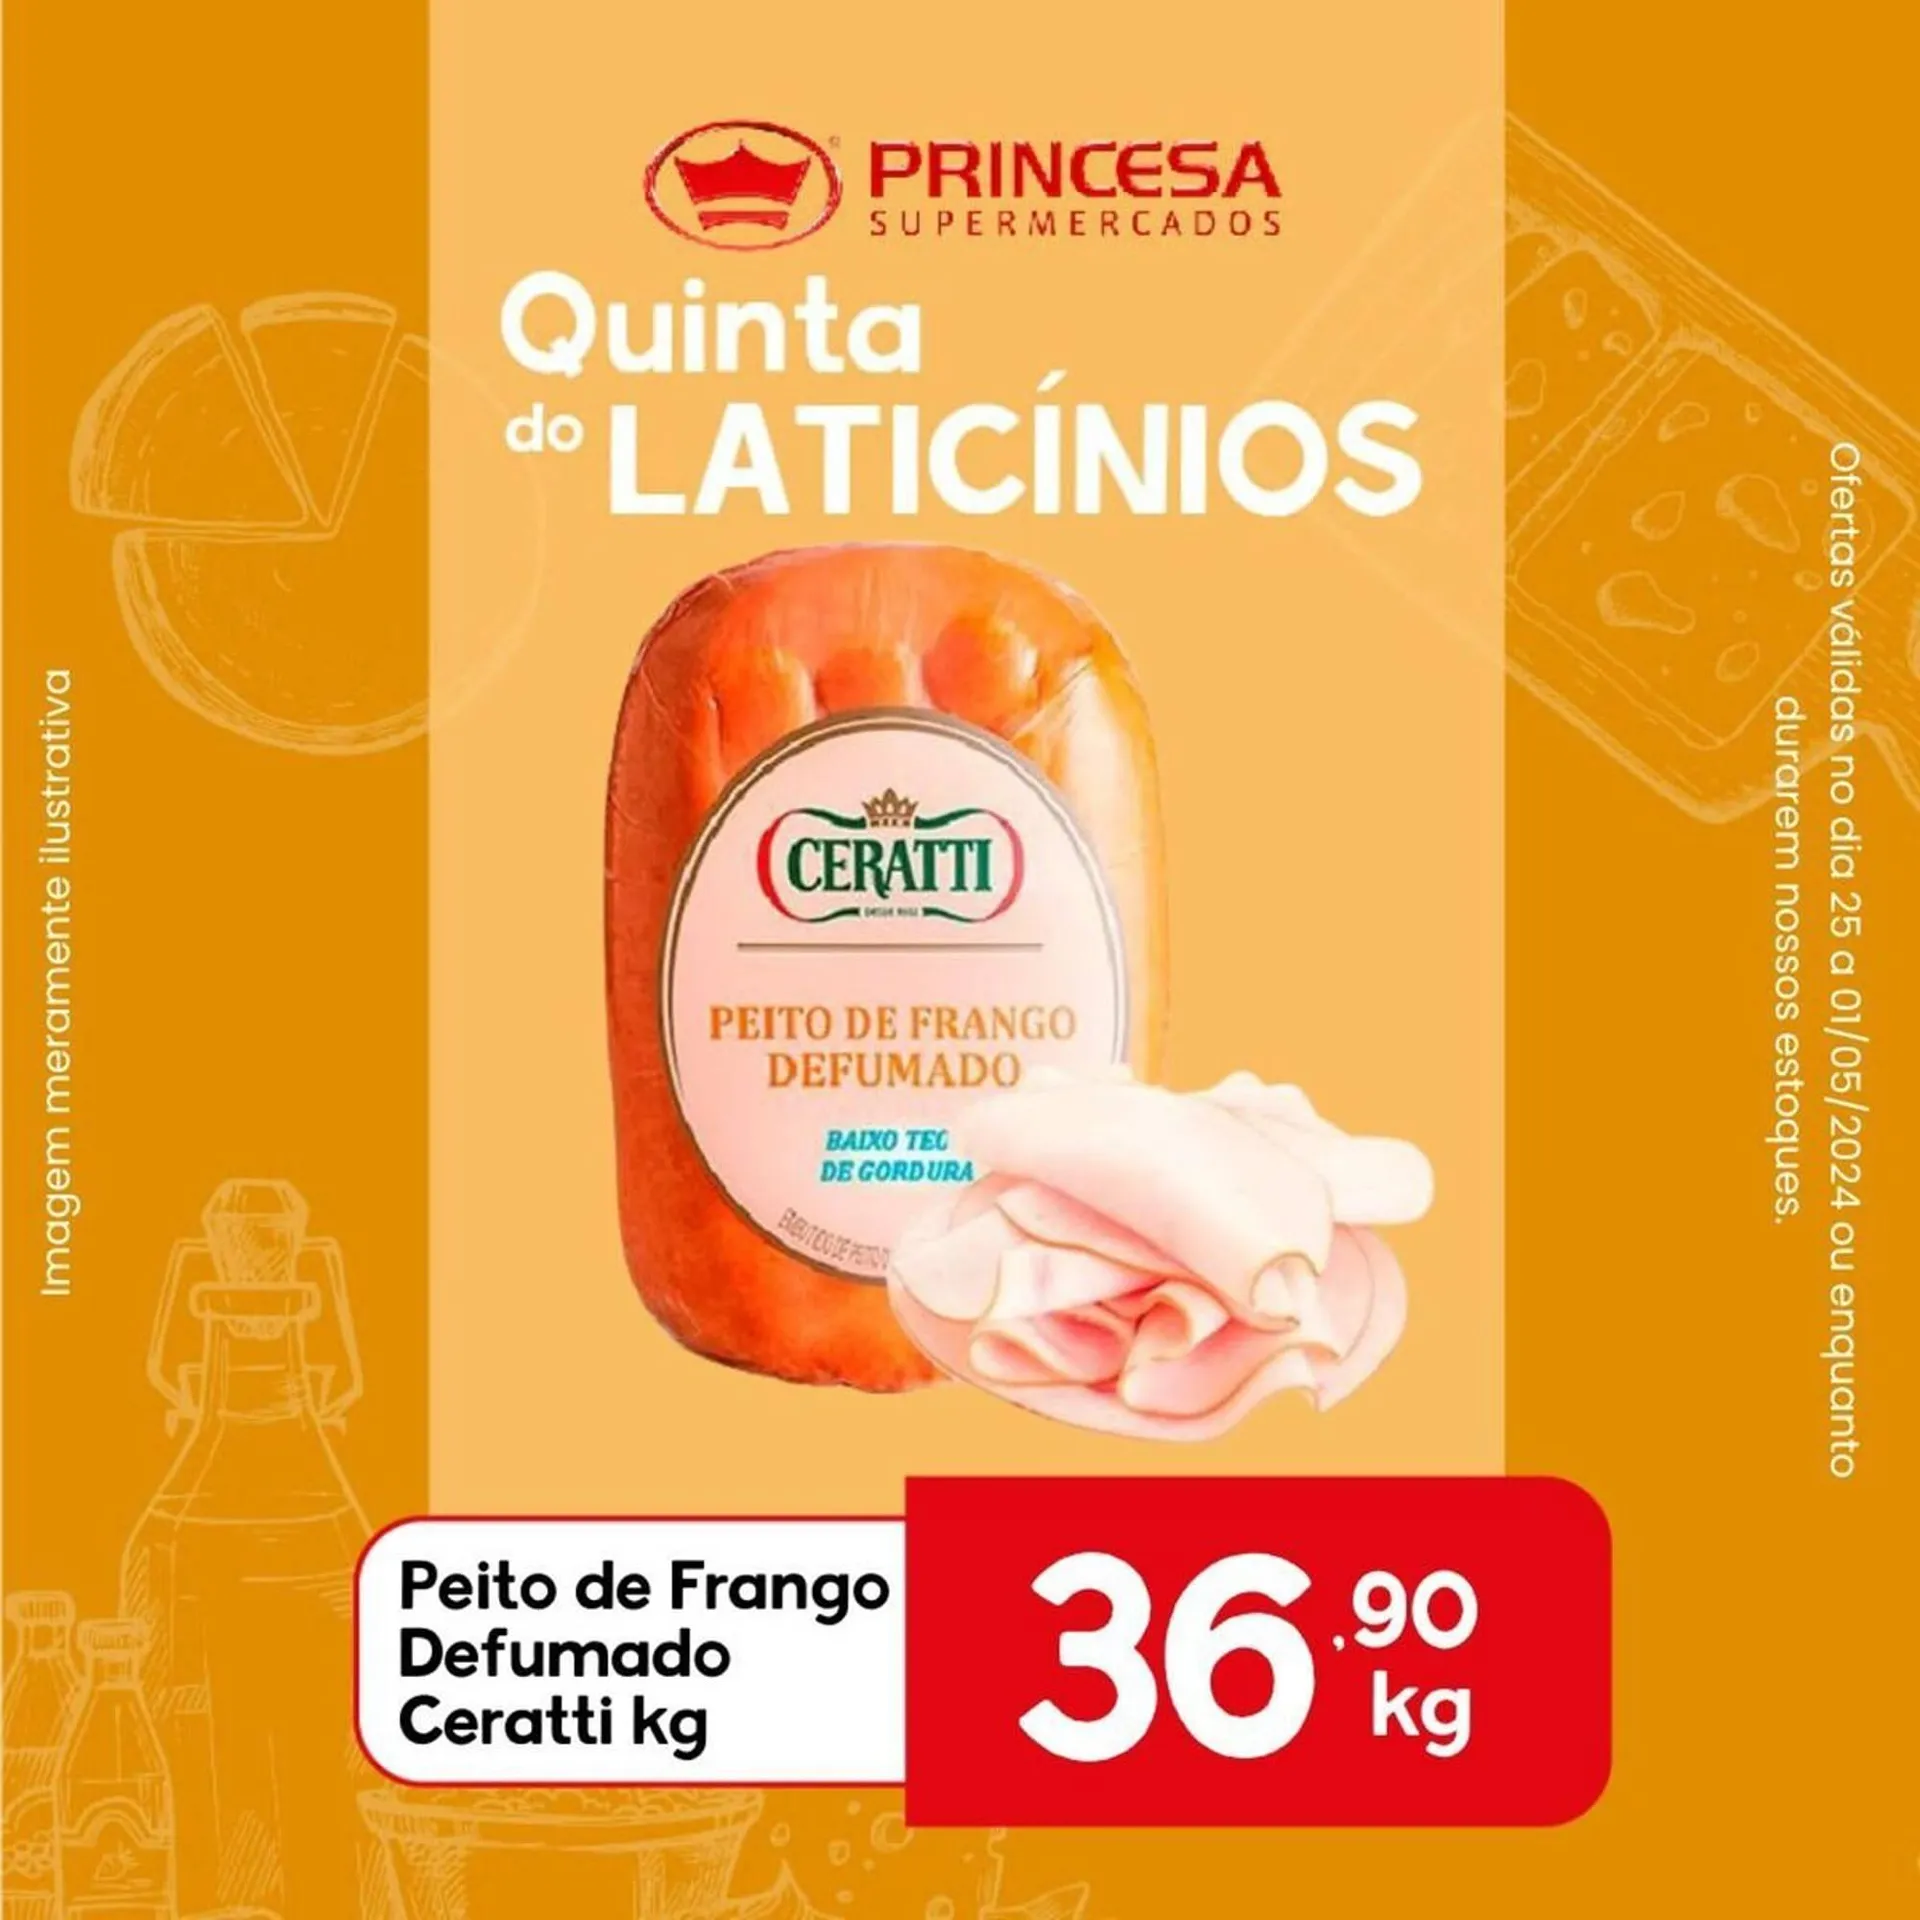 Catálogo Supermercados Princesa - 7